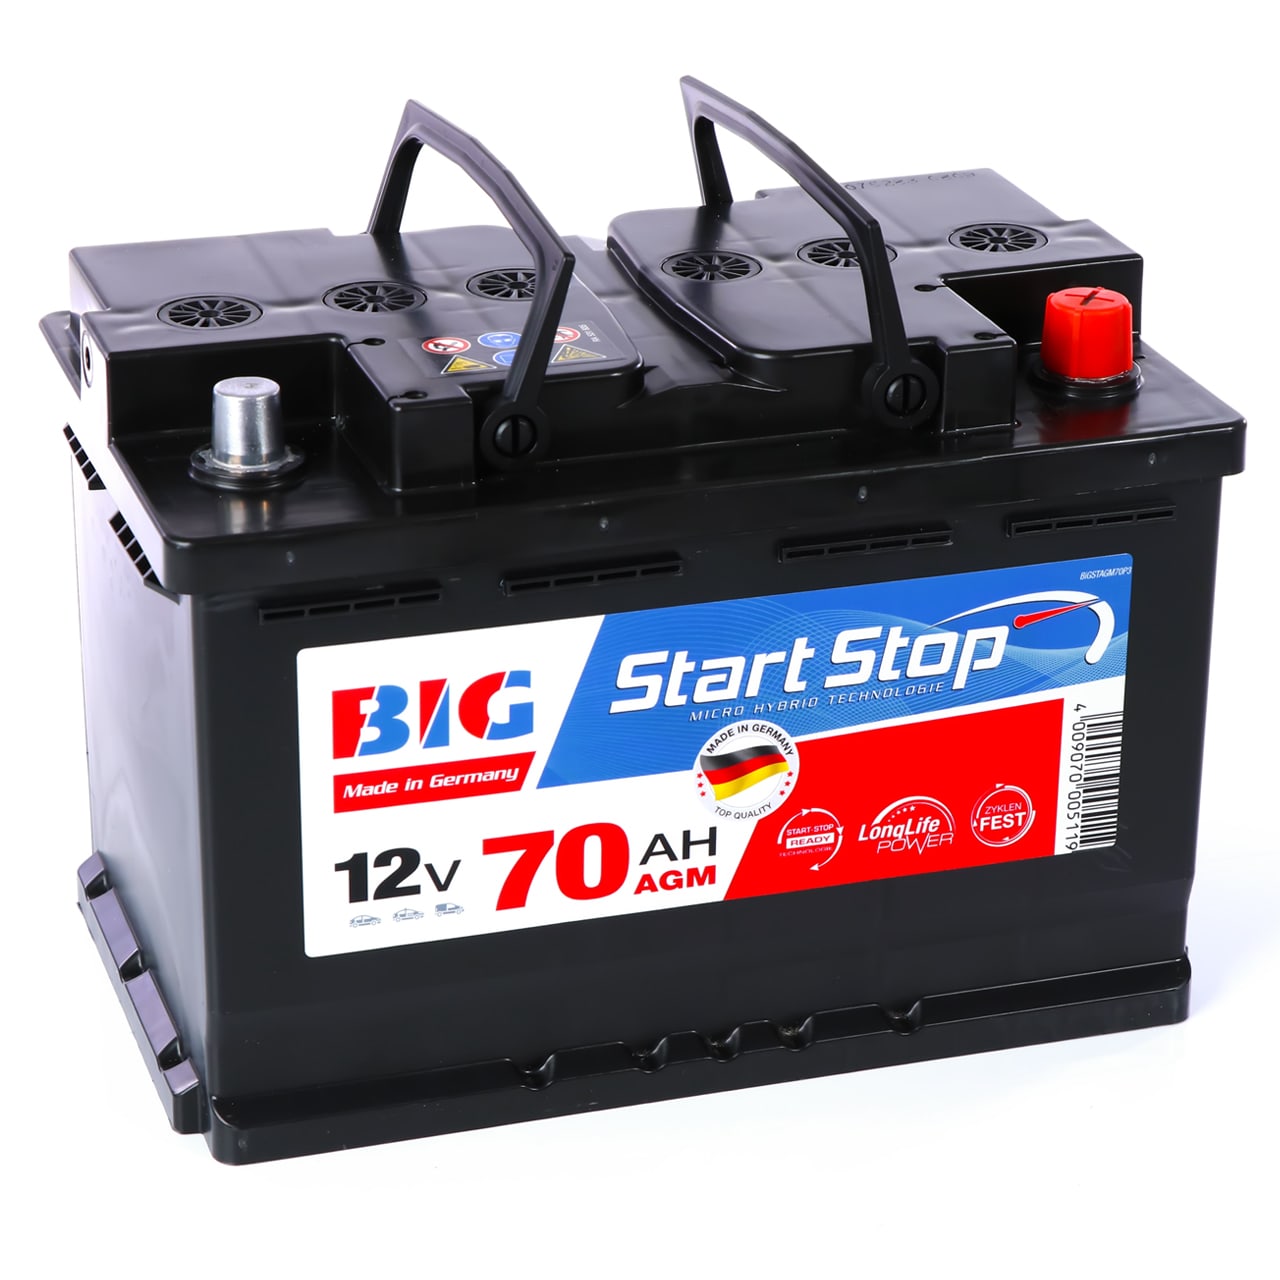 https://www.batterie-industrie-germany.de/cdn/shop/files/Autobatterie-BIGStart-Stop70-AGM-12V-70Ah-Seite-links_1280x.jpg?v=1700650533